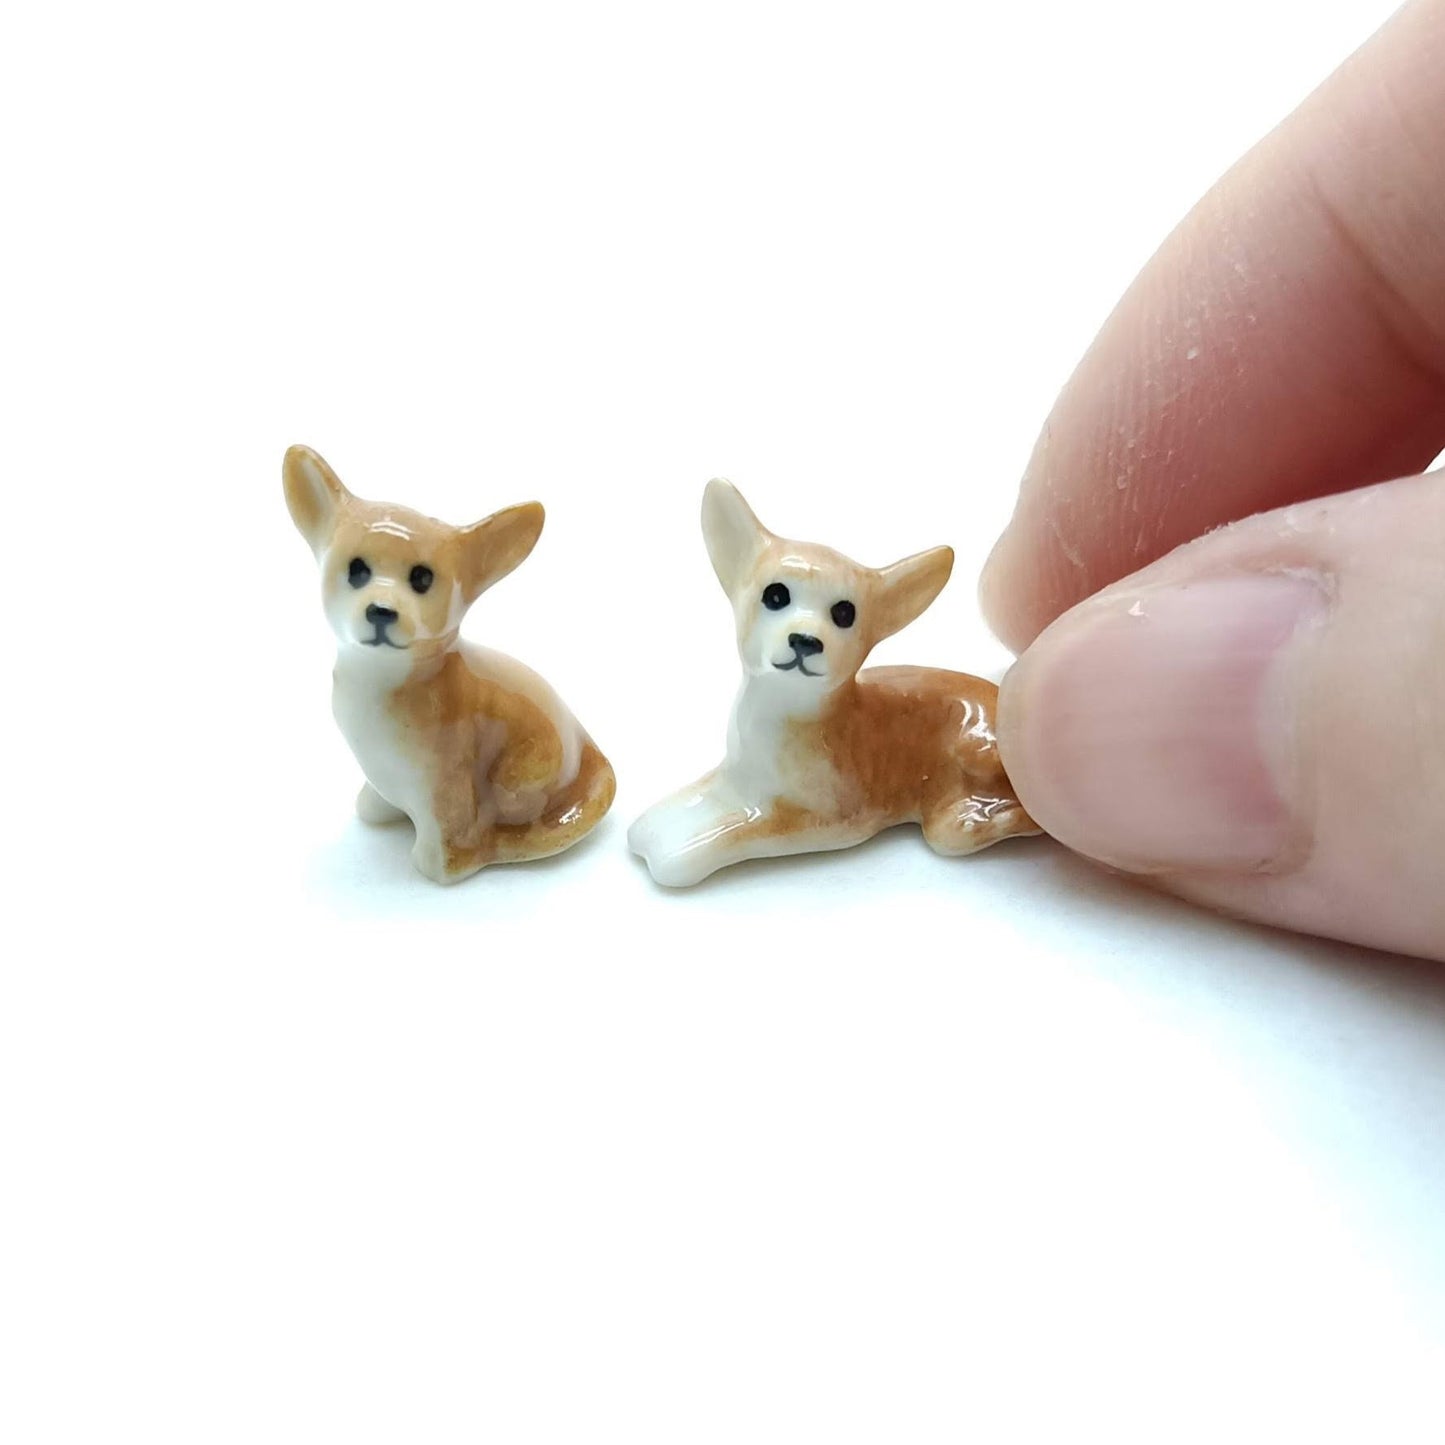 2 Tiny Chihuahua Figurines